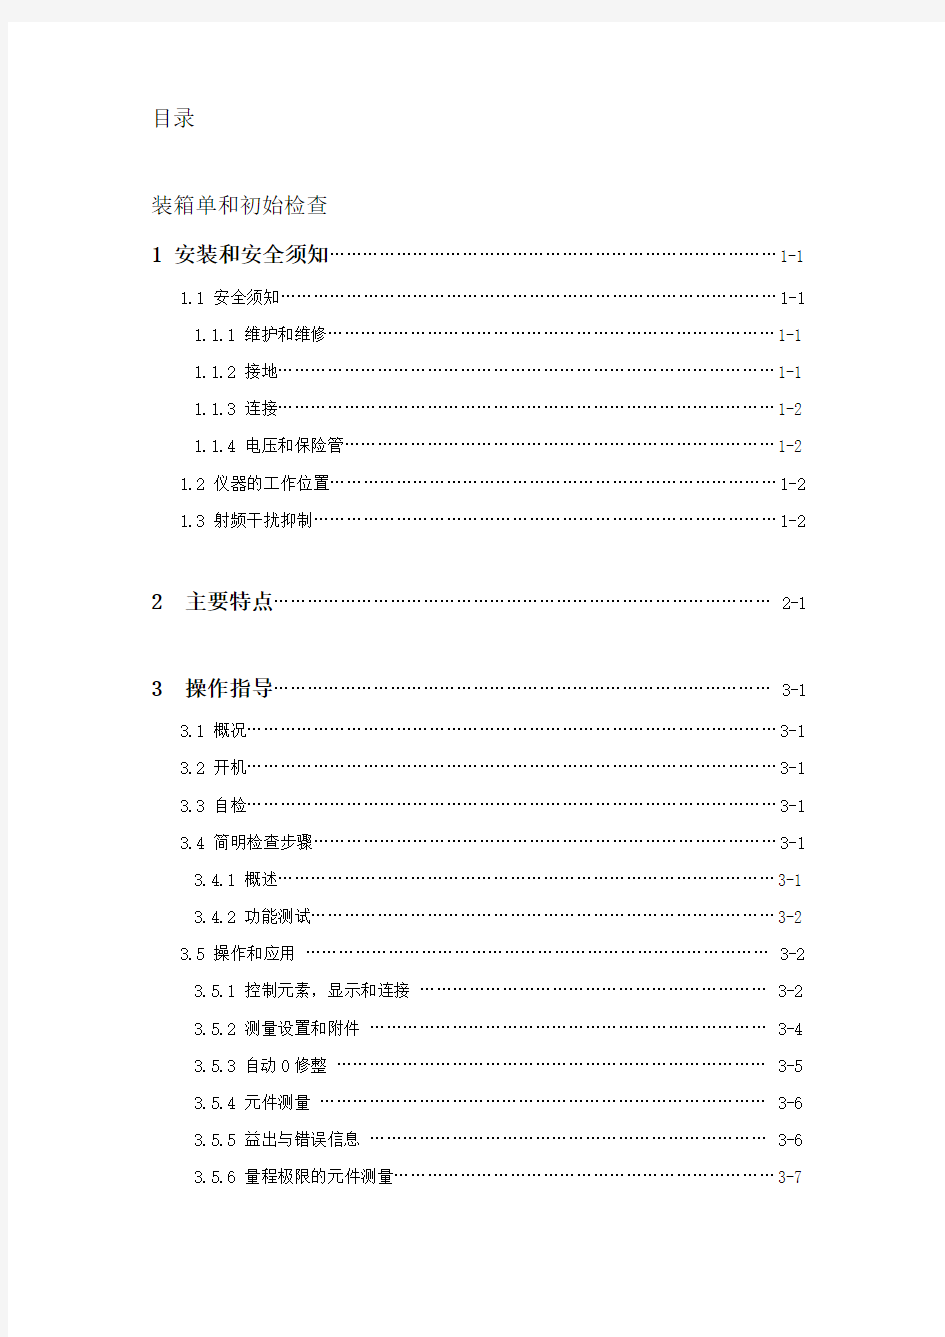 FLUCK_PM6306 中文用户手册